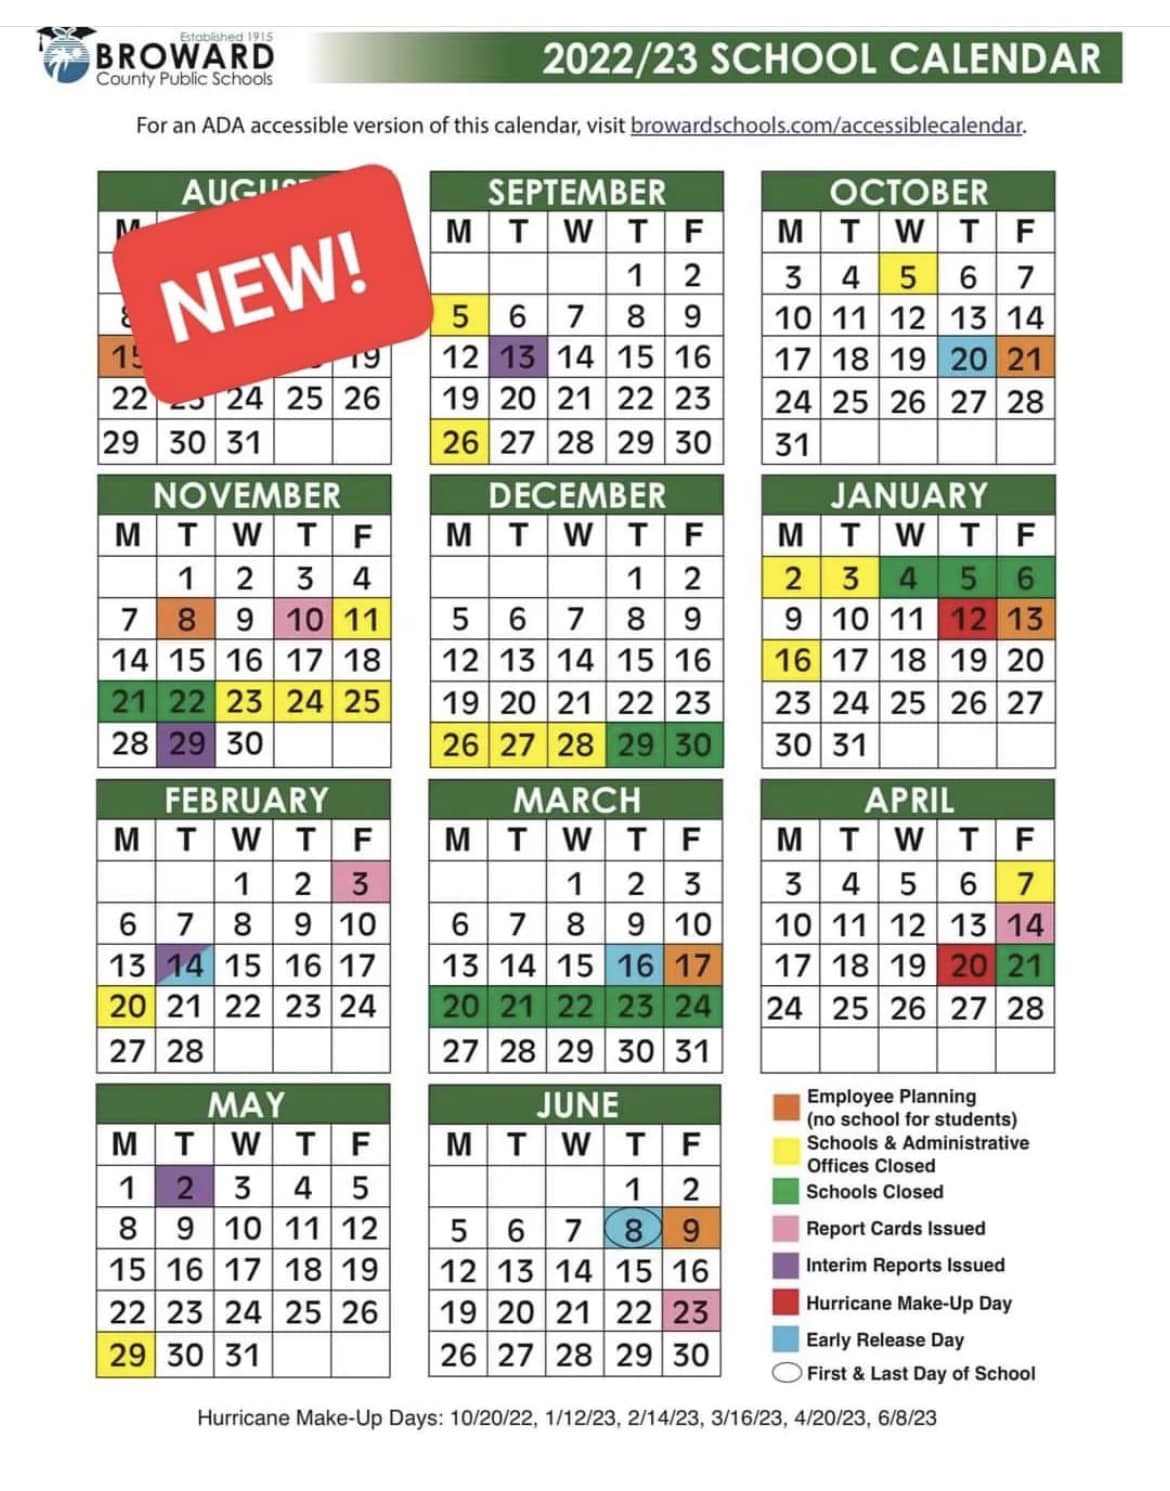 Calendar for the 2022-23 season